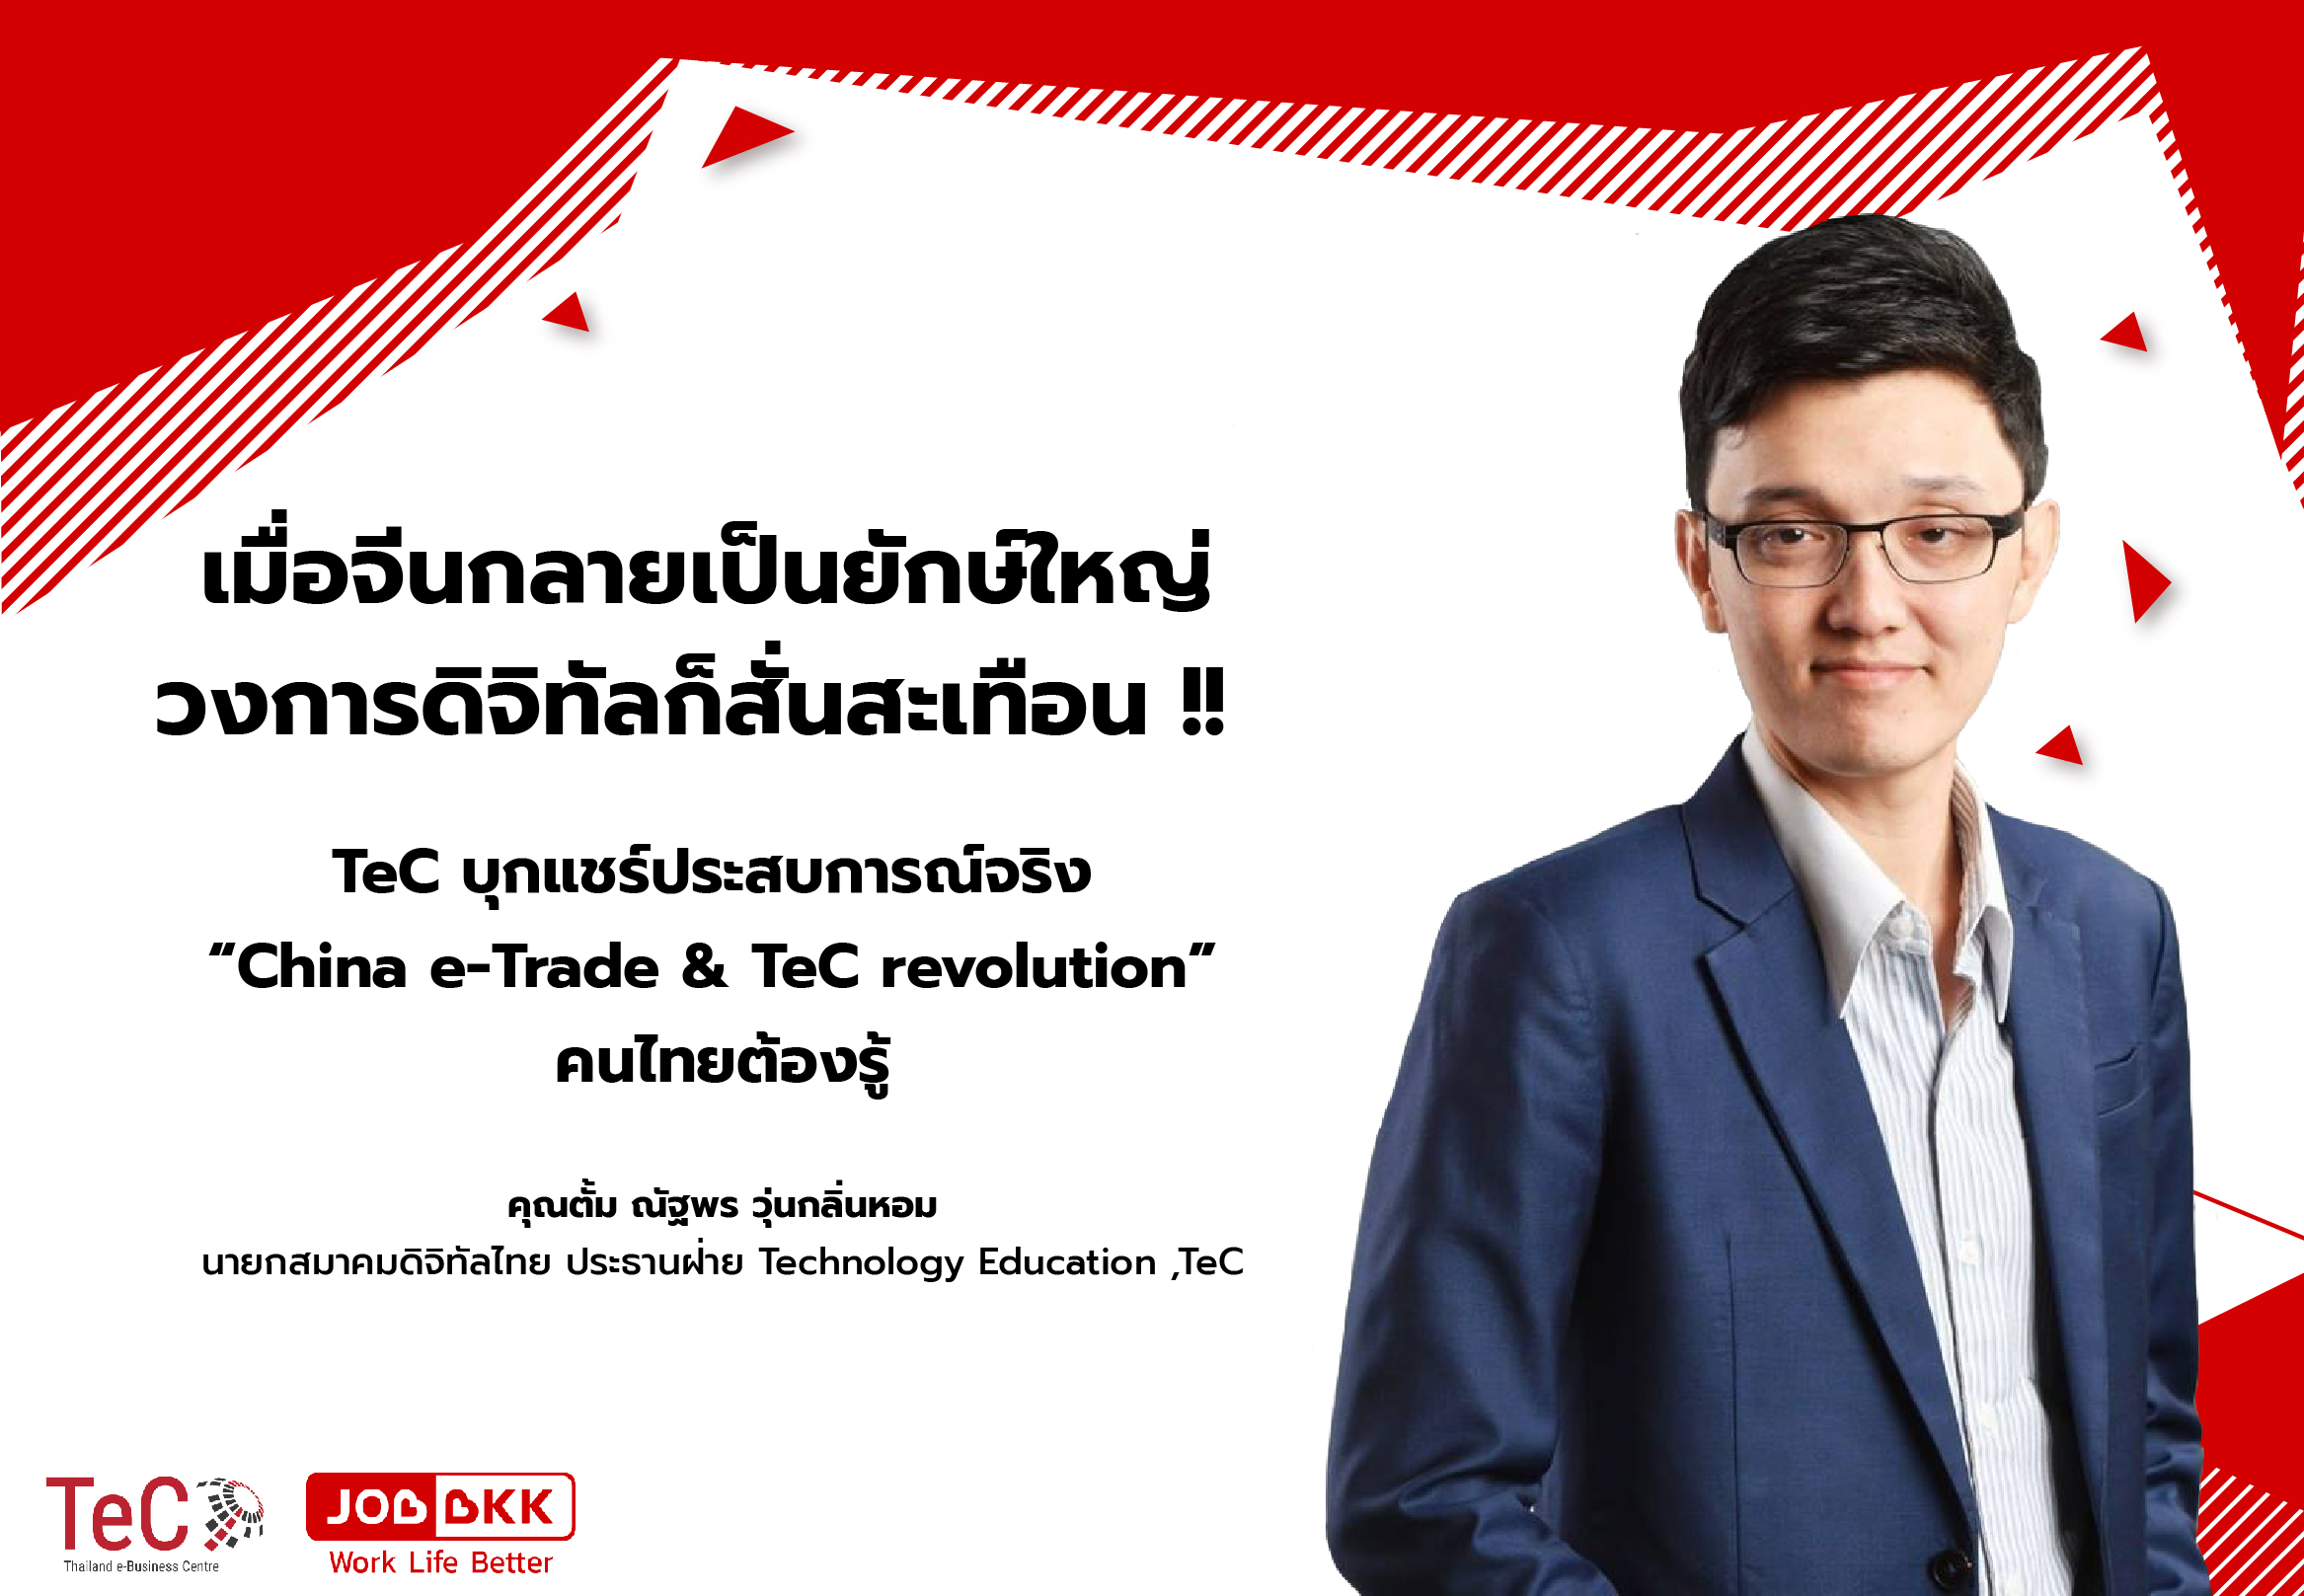 หางาน,สมัครงาน,งาน,เมื่อจีนกลายเป็นยักษ์ใหญ่ วงการดิจิทัลก็สั่นสะเทือน TeC บุกแชร์ประสบการณ์จริง “China e-Trade & TeC revolution” คนไทยต้องรู้